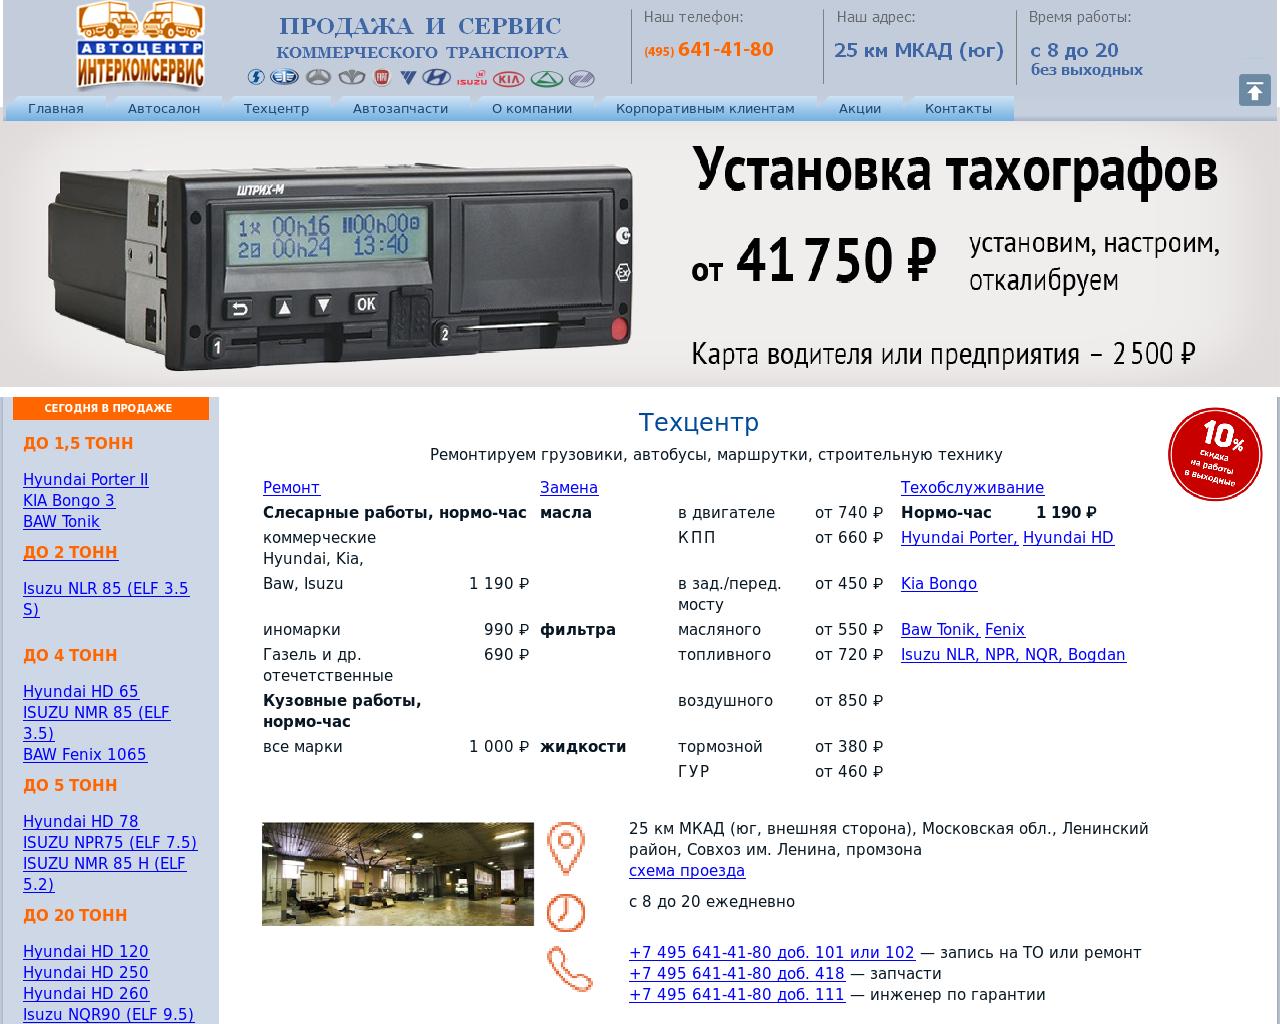 Изображение сайта 6414180.ru в разрешении 1280x1024